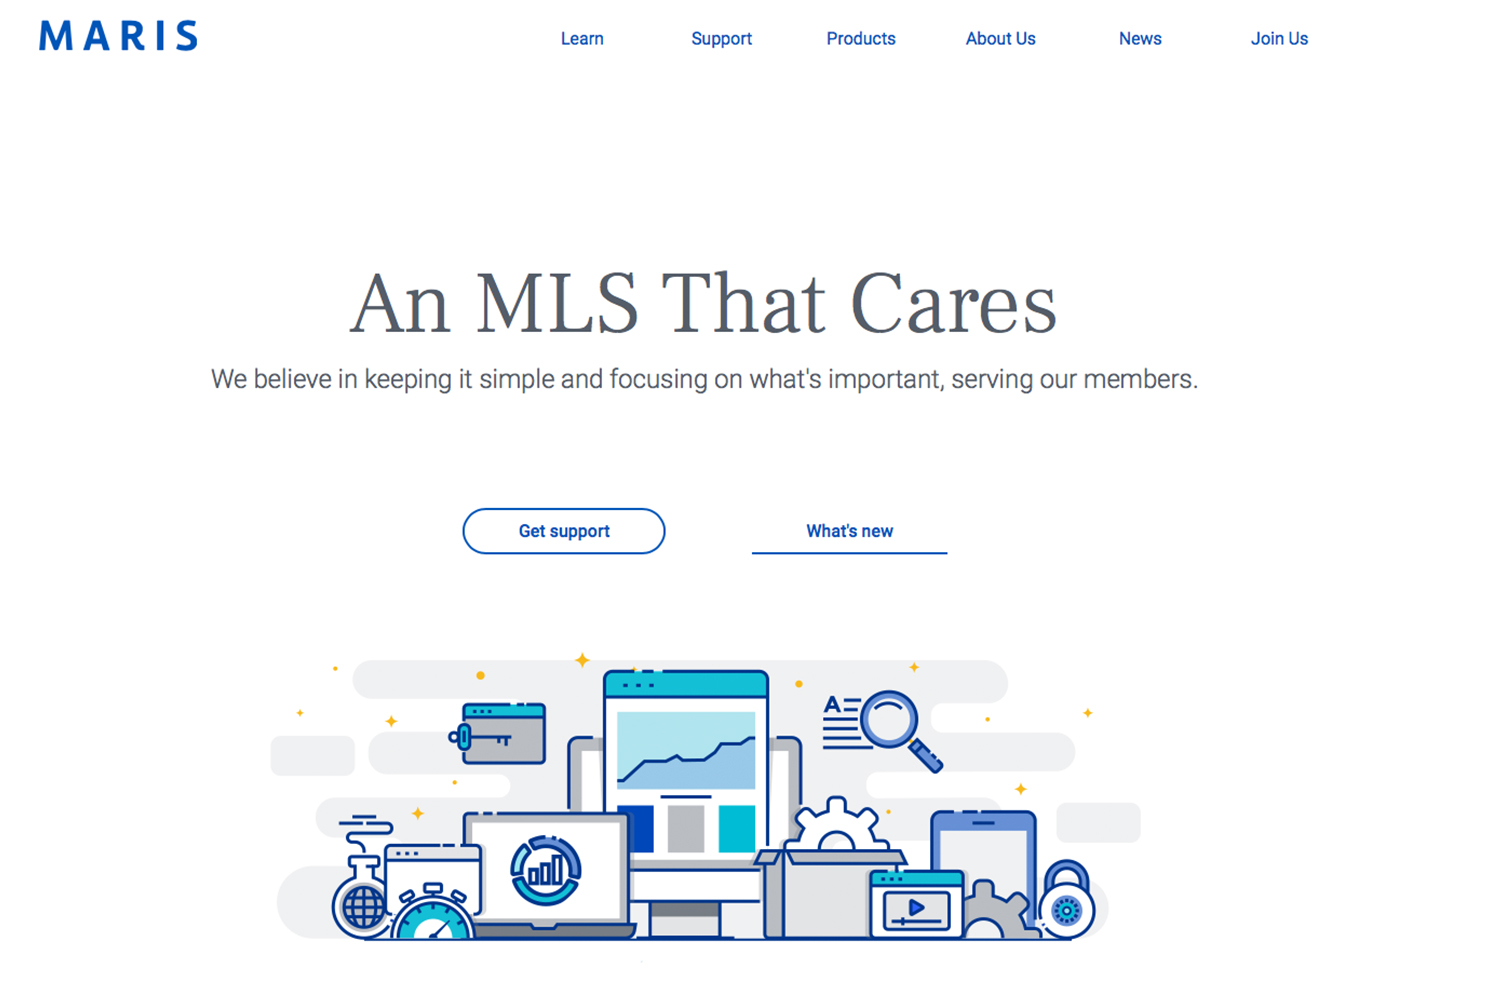 MARIS MLS website